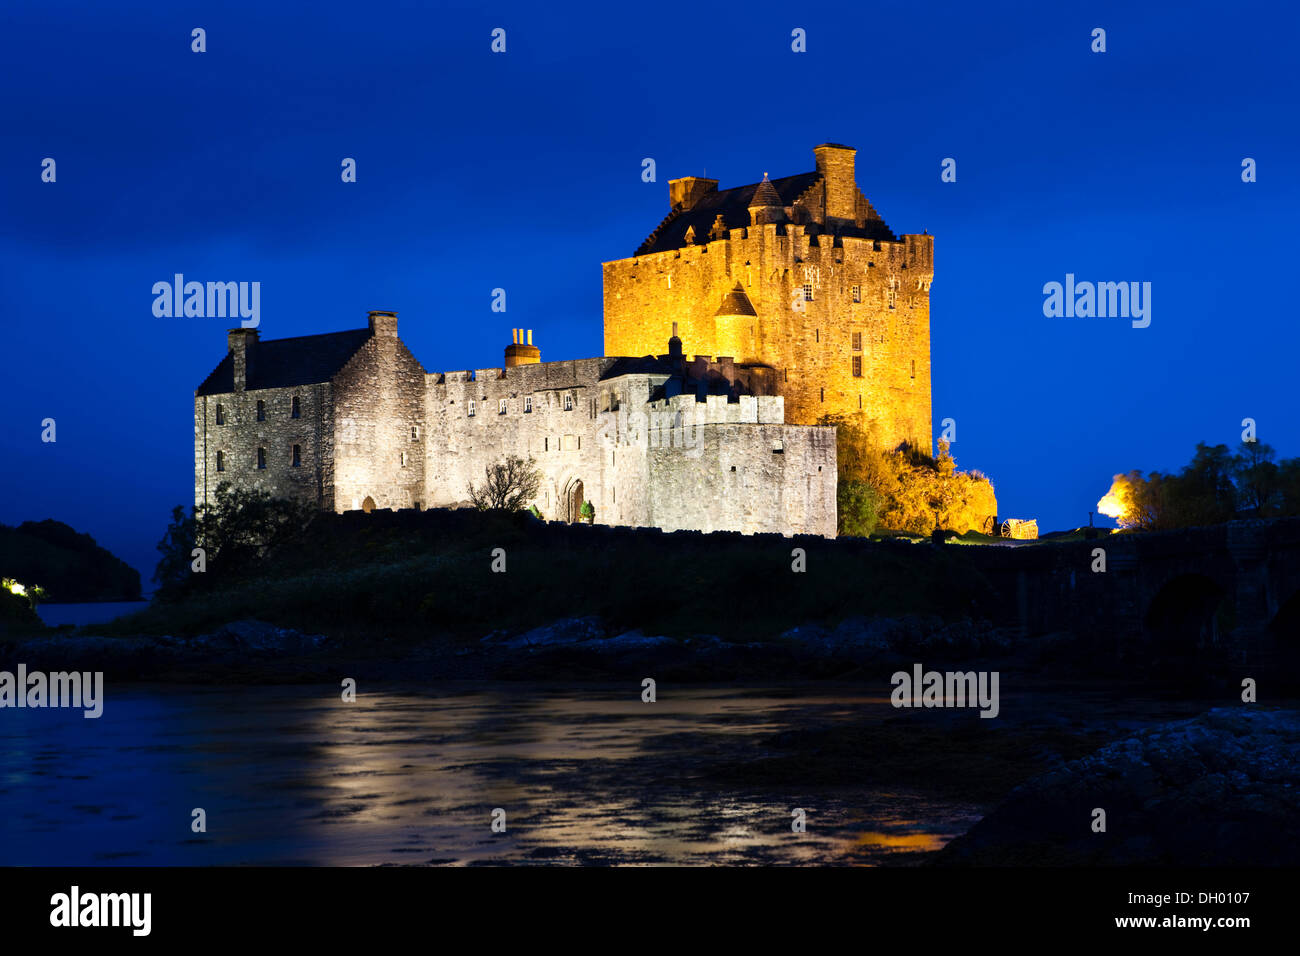 Le Château d'Eilean Donan allumé au crépuscule, Loch Alsh, Ecosse, Royaume-Uni Banque D'Images